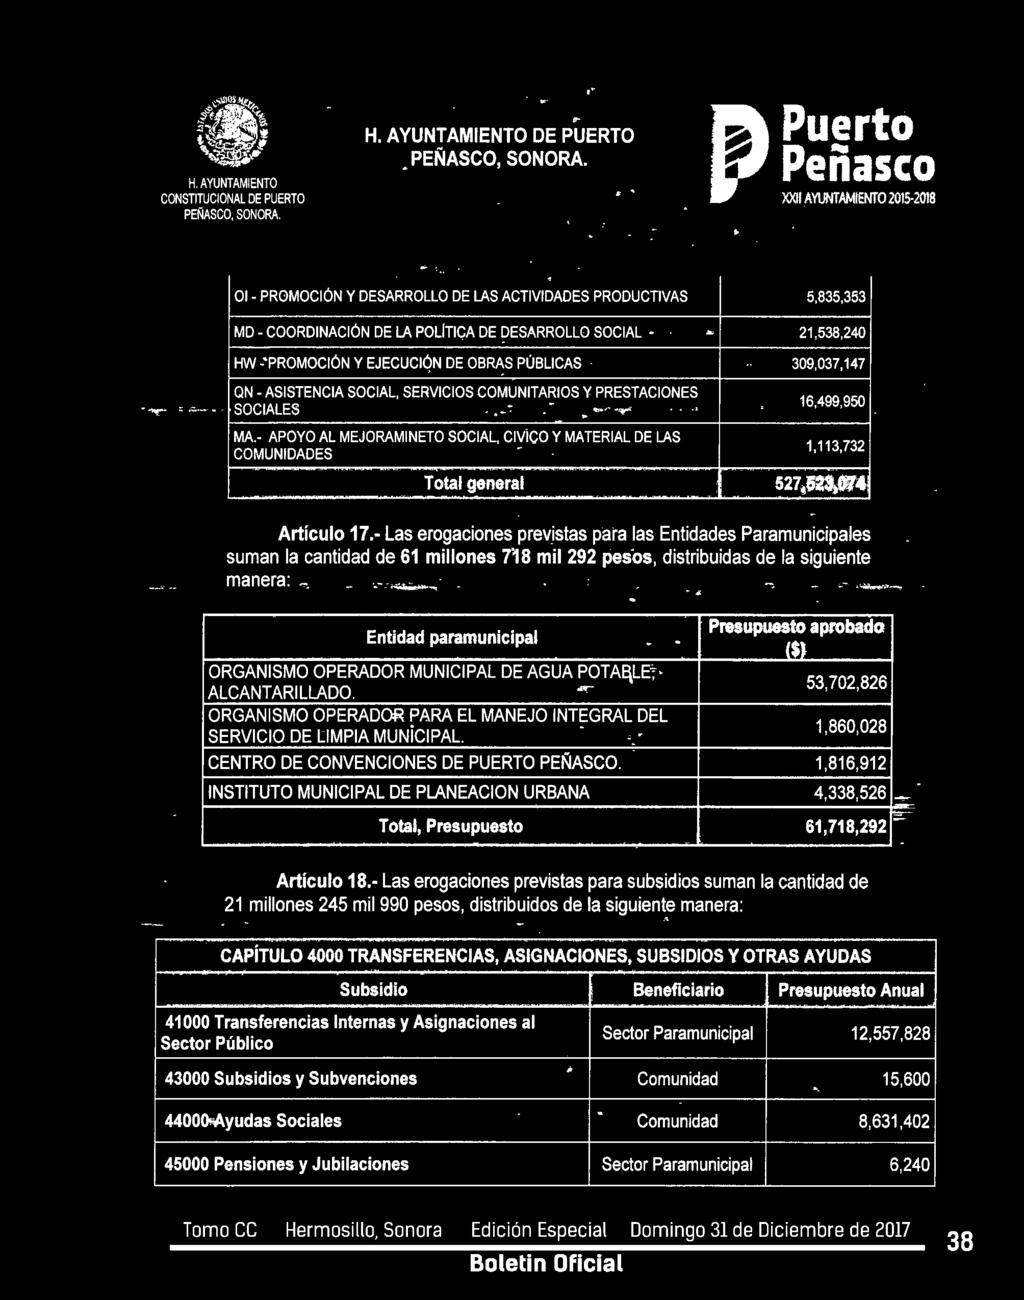 Entidad paramunicipal Presupuest aprbad - - ($) ORGANISMO OPERADOR MUNICIPAL DE AGUA POTAE\LE~- 53,702,826 ALCANTARILLADO.